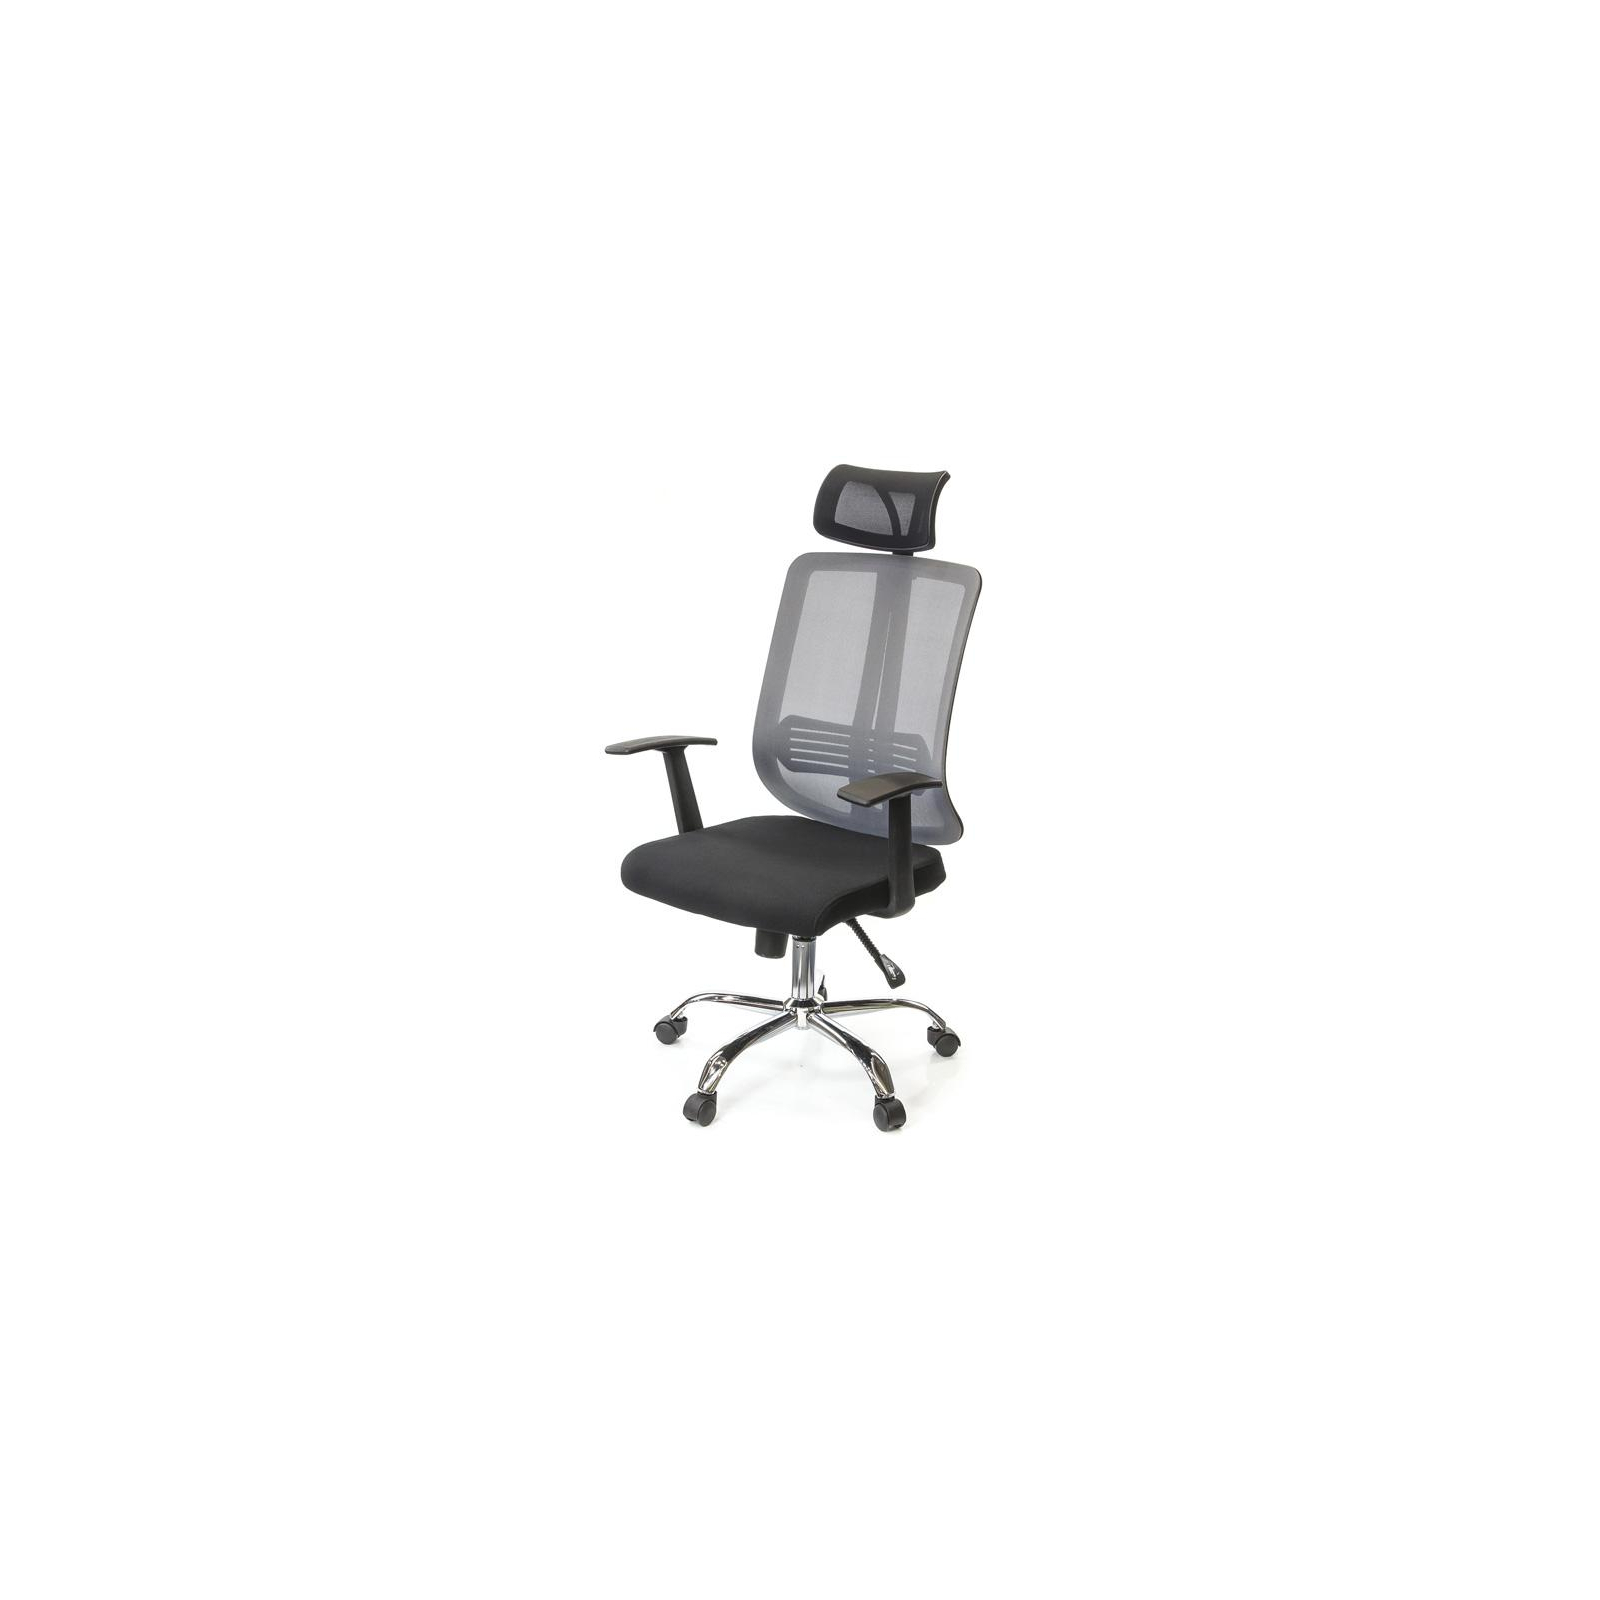 Офісне крісло Аклас Сити CH SR(L) Сіре (9885)